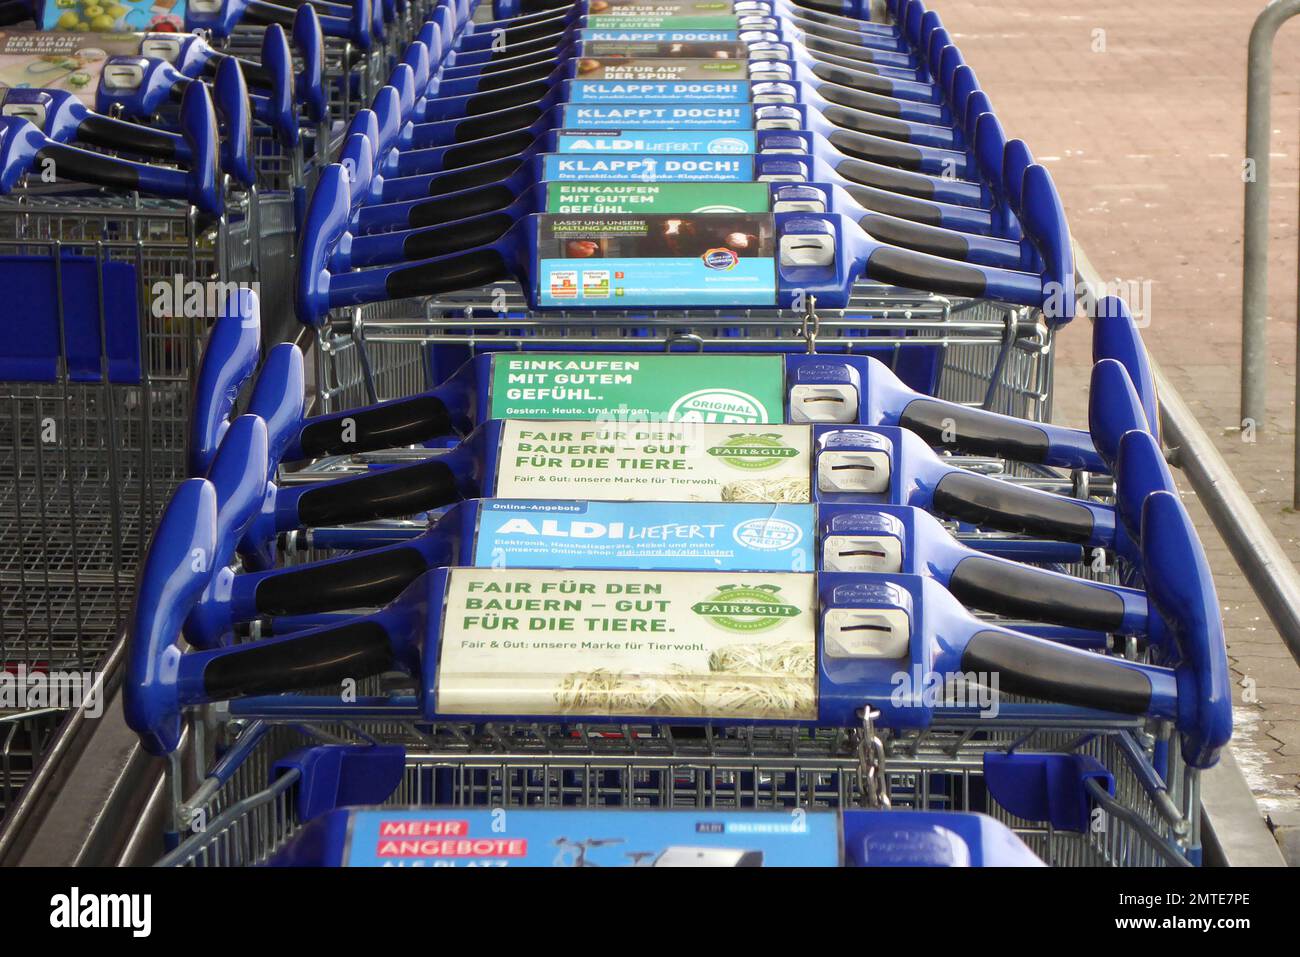 Einkaufswagen vom Lebensmittel-Discounter Aldi Stock Photo